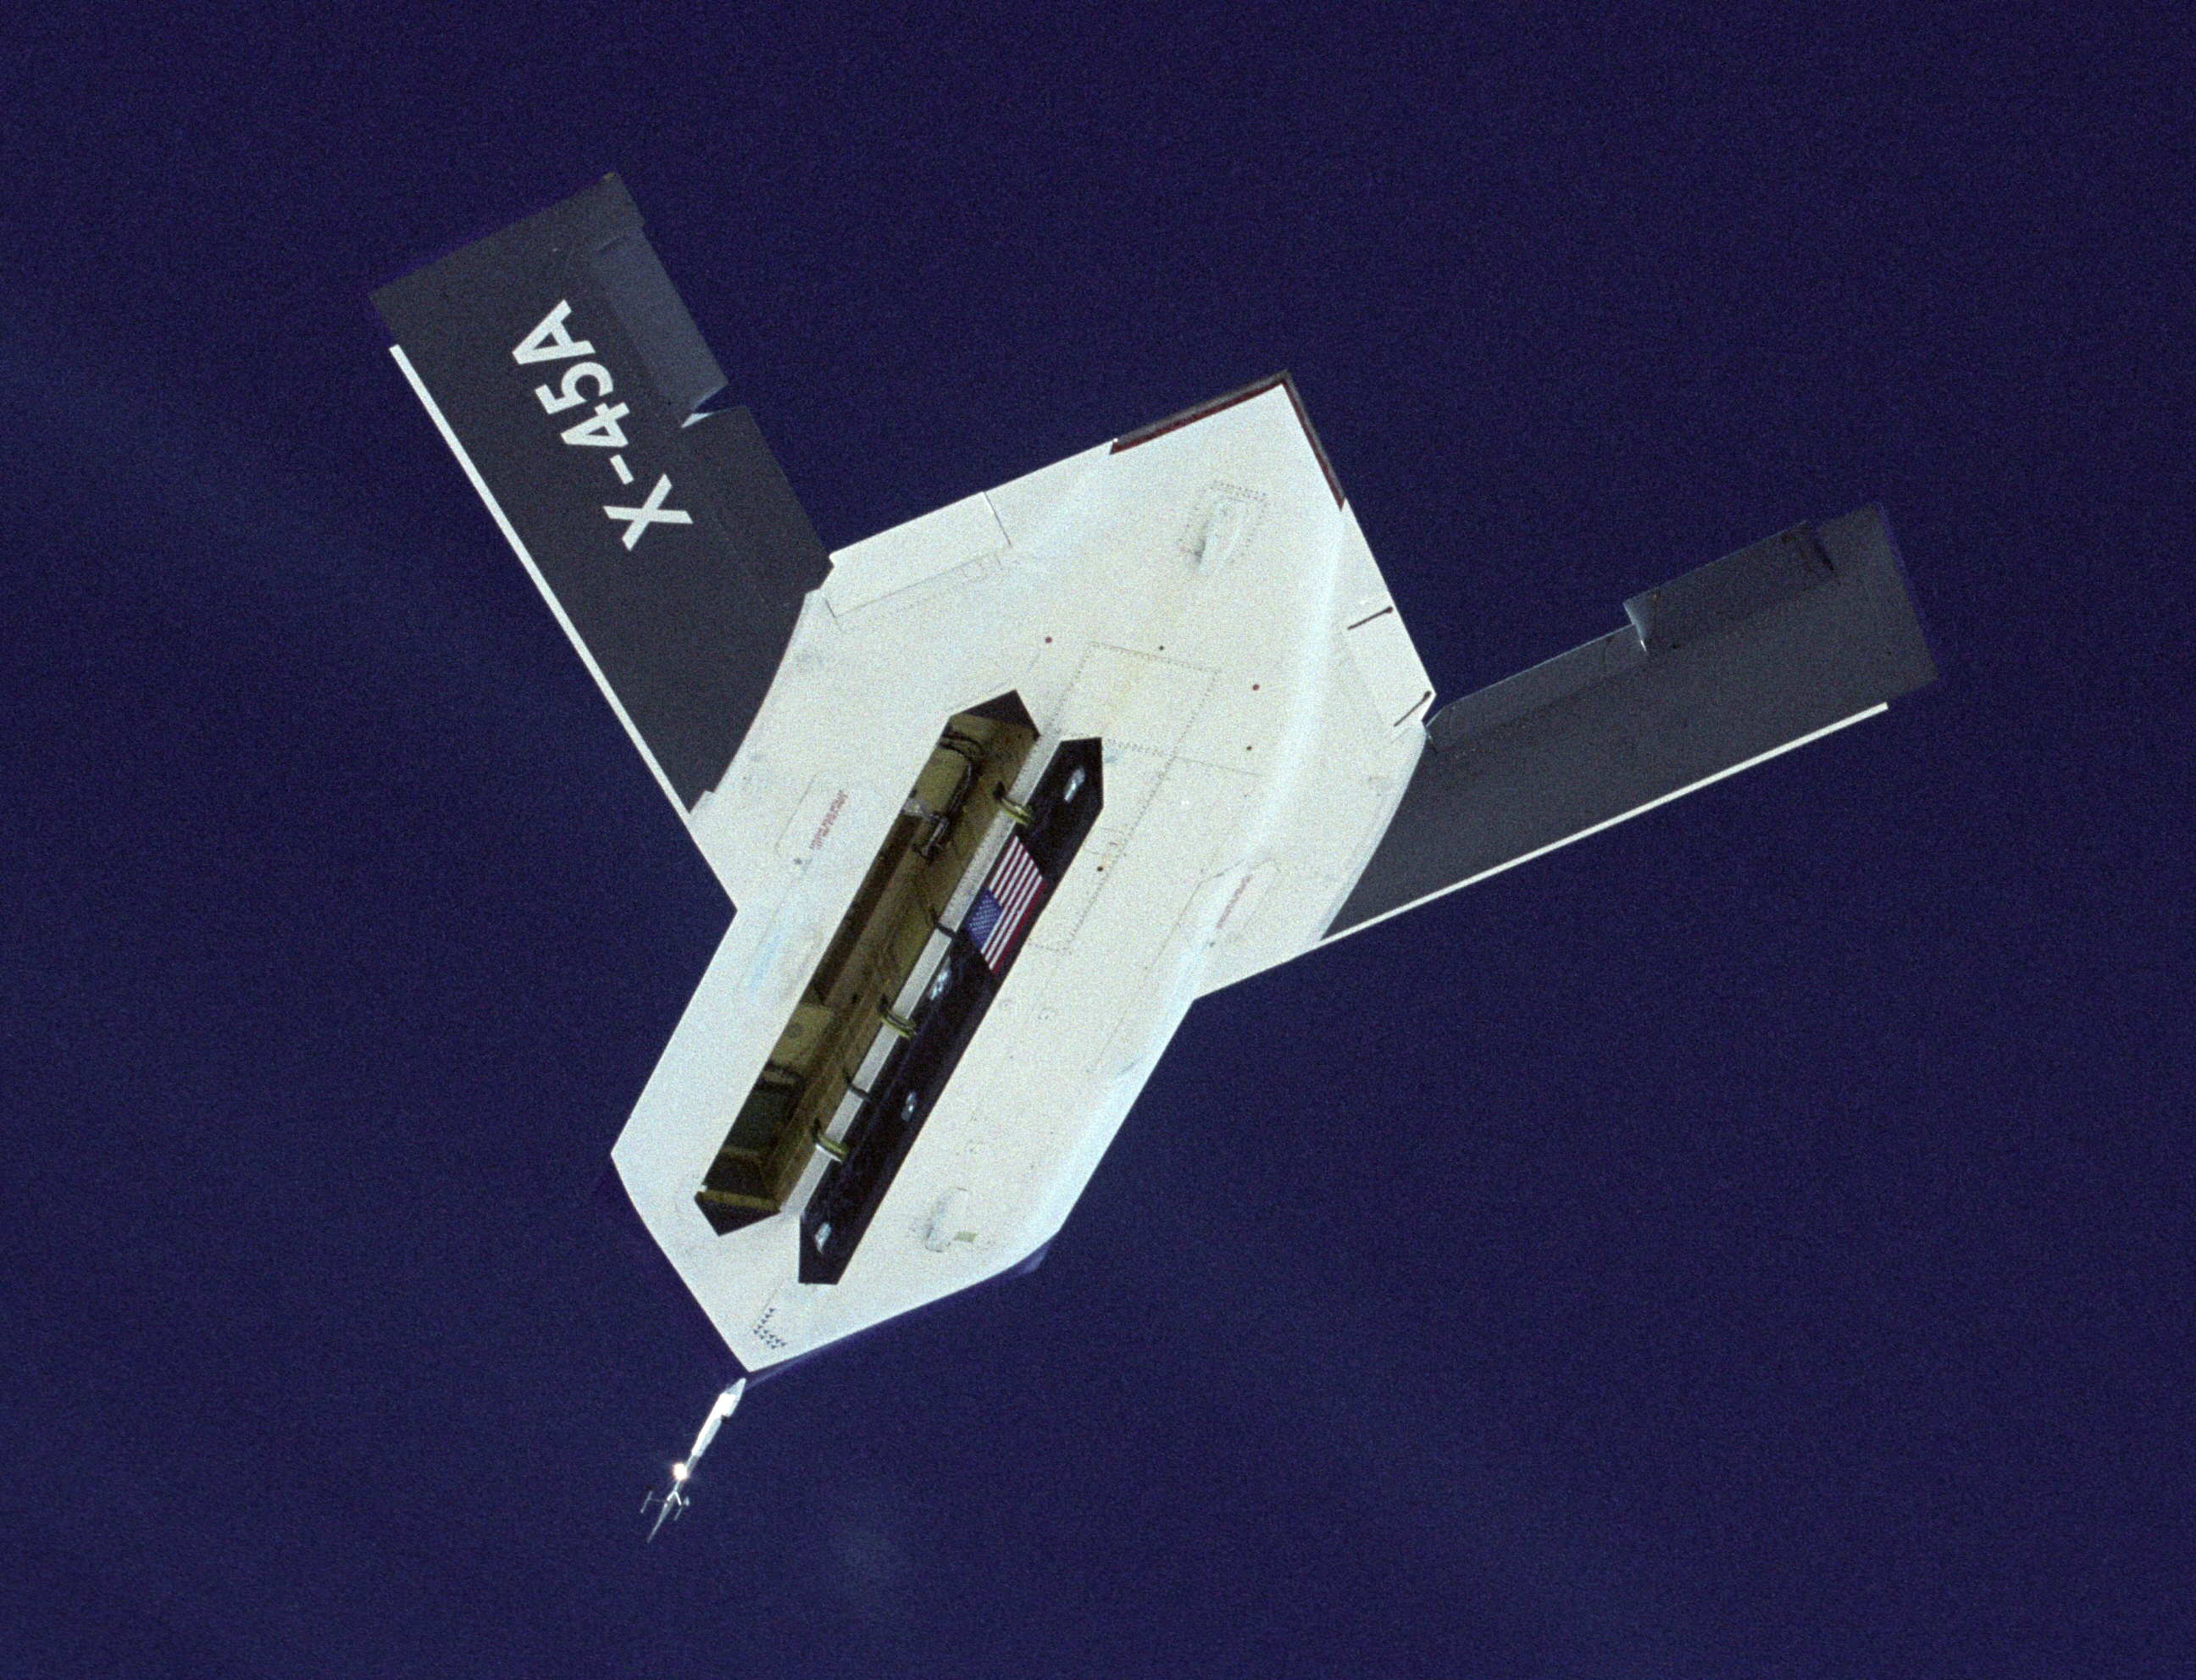 Boeing X-45